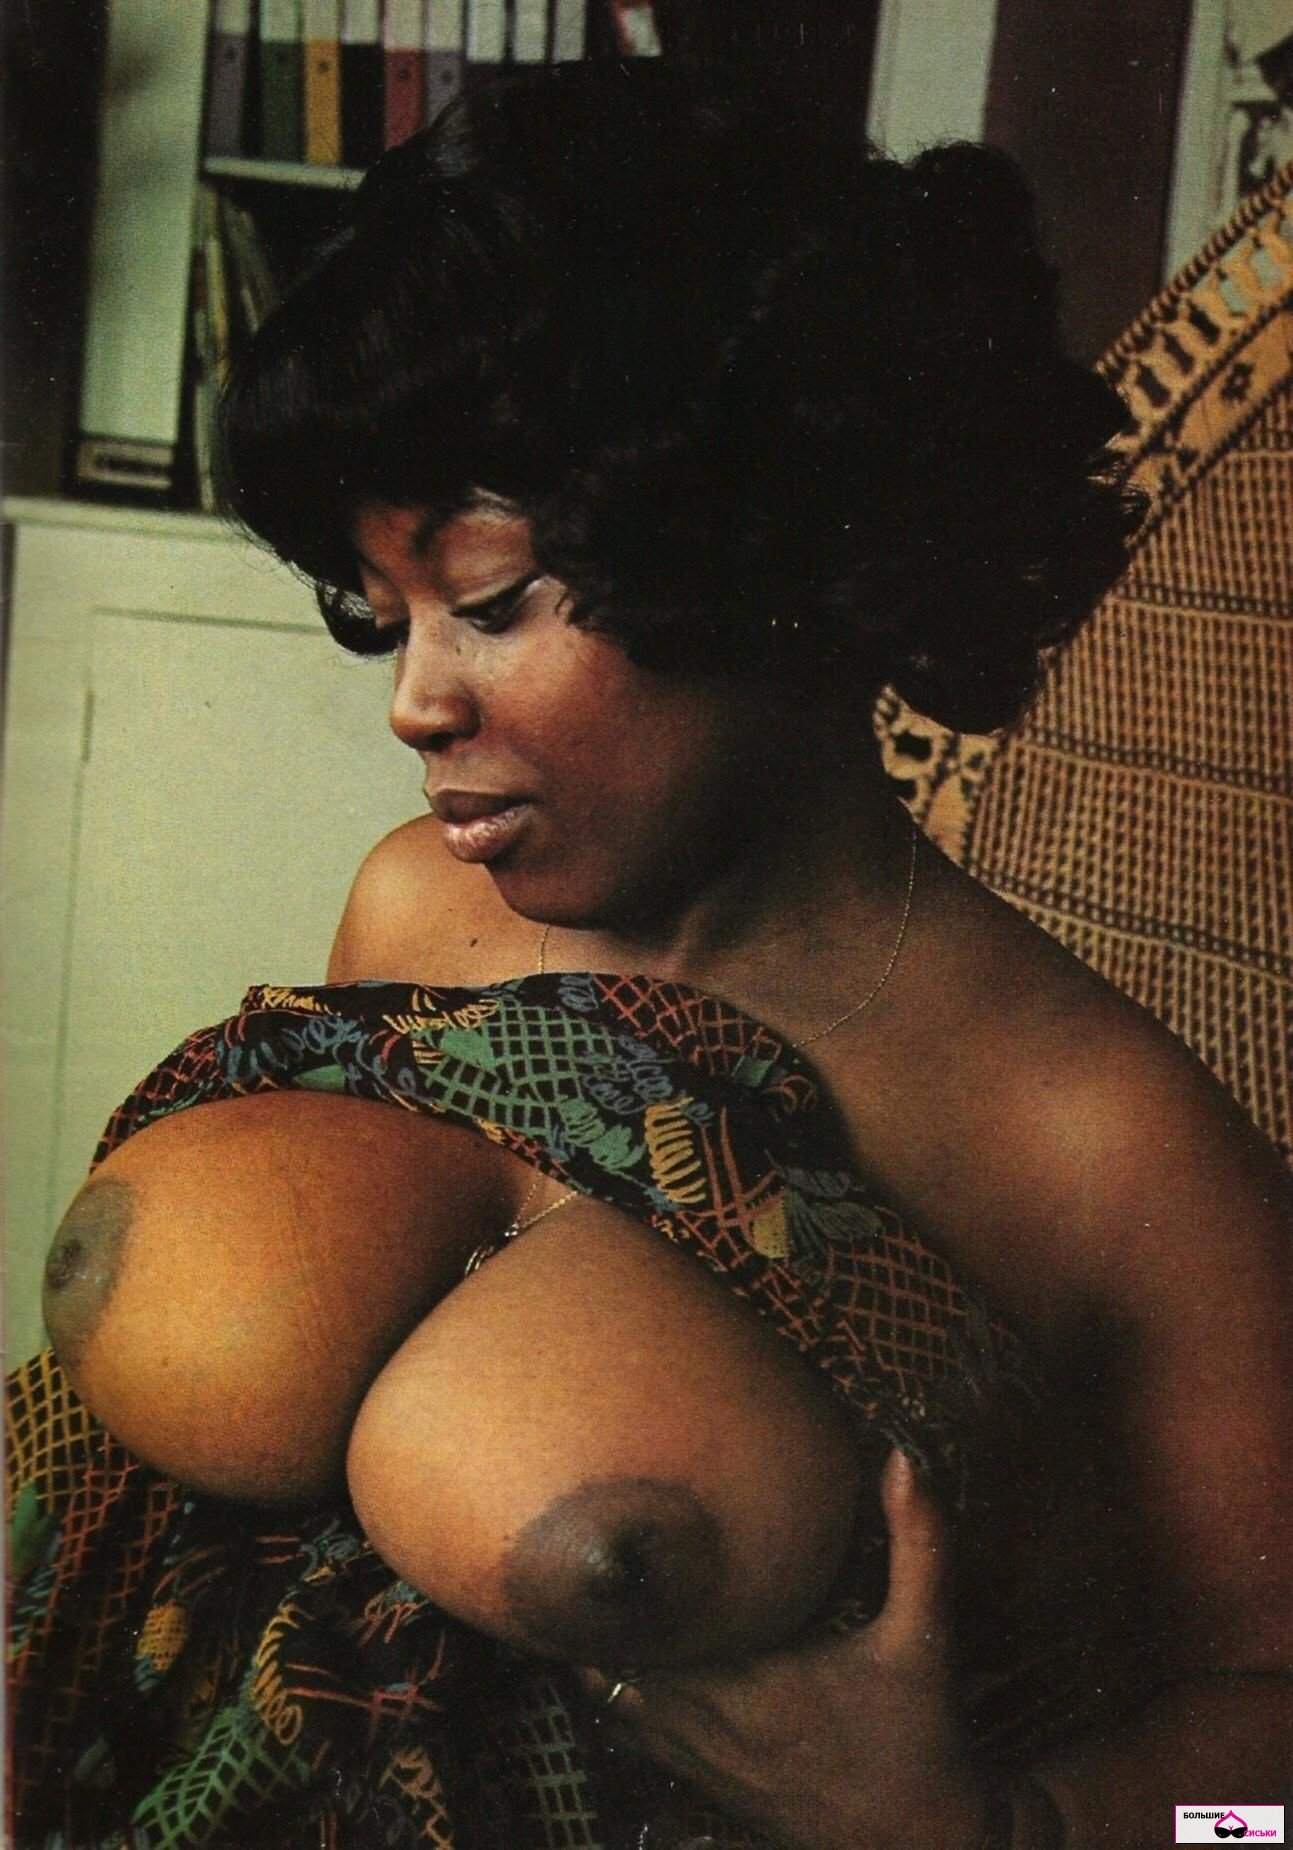 Big Sexy Black Women Vintage - Black Boobs Vintage - 53 photos